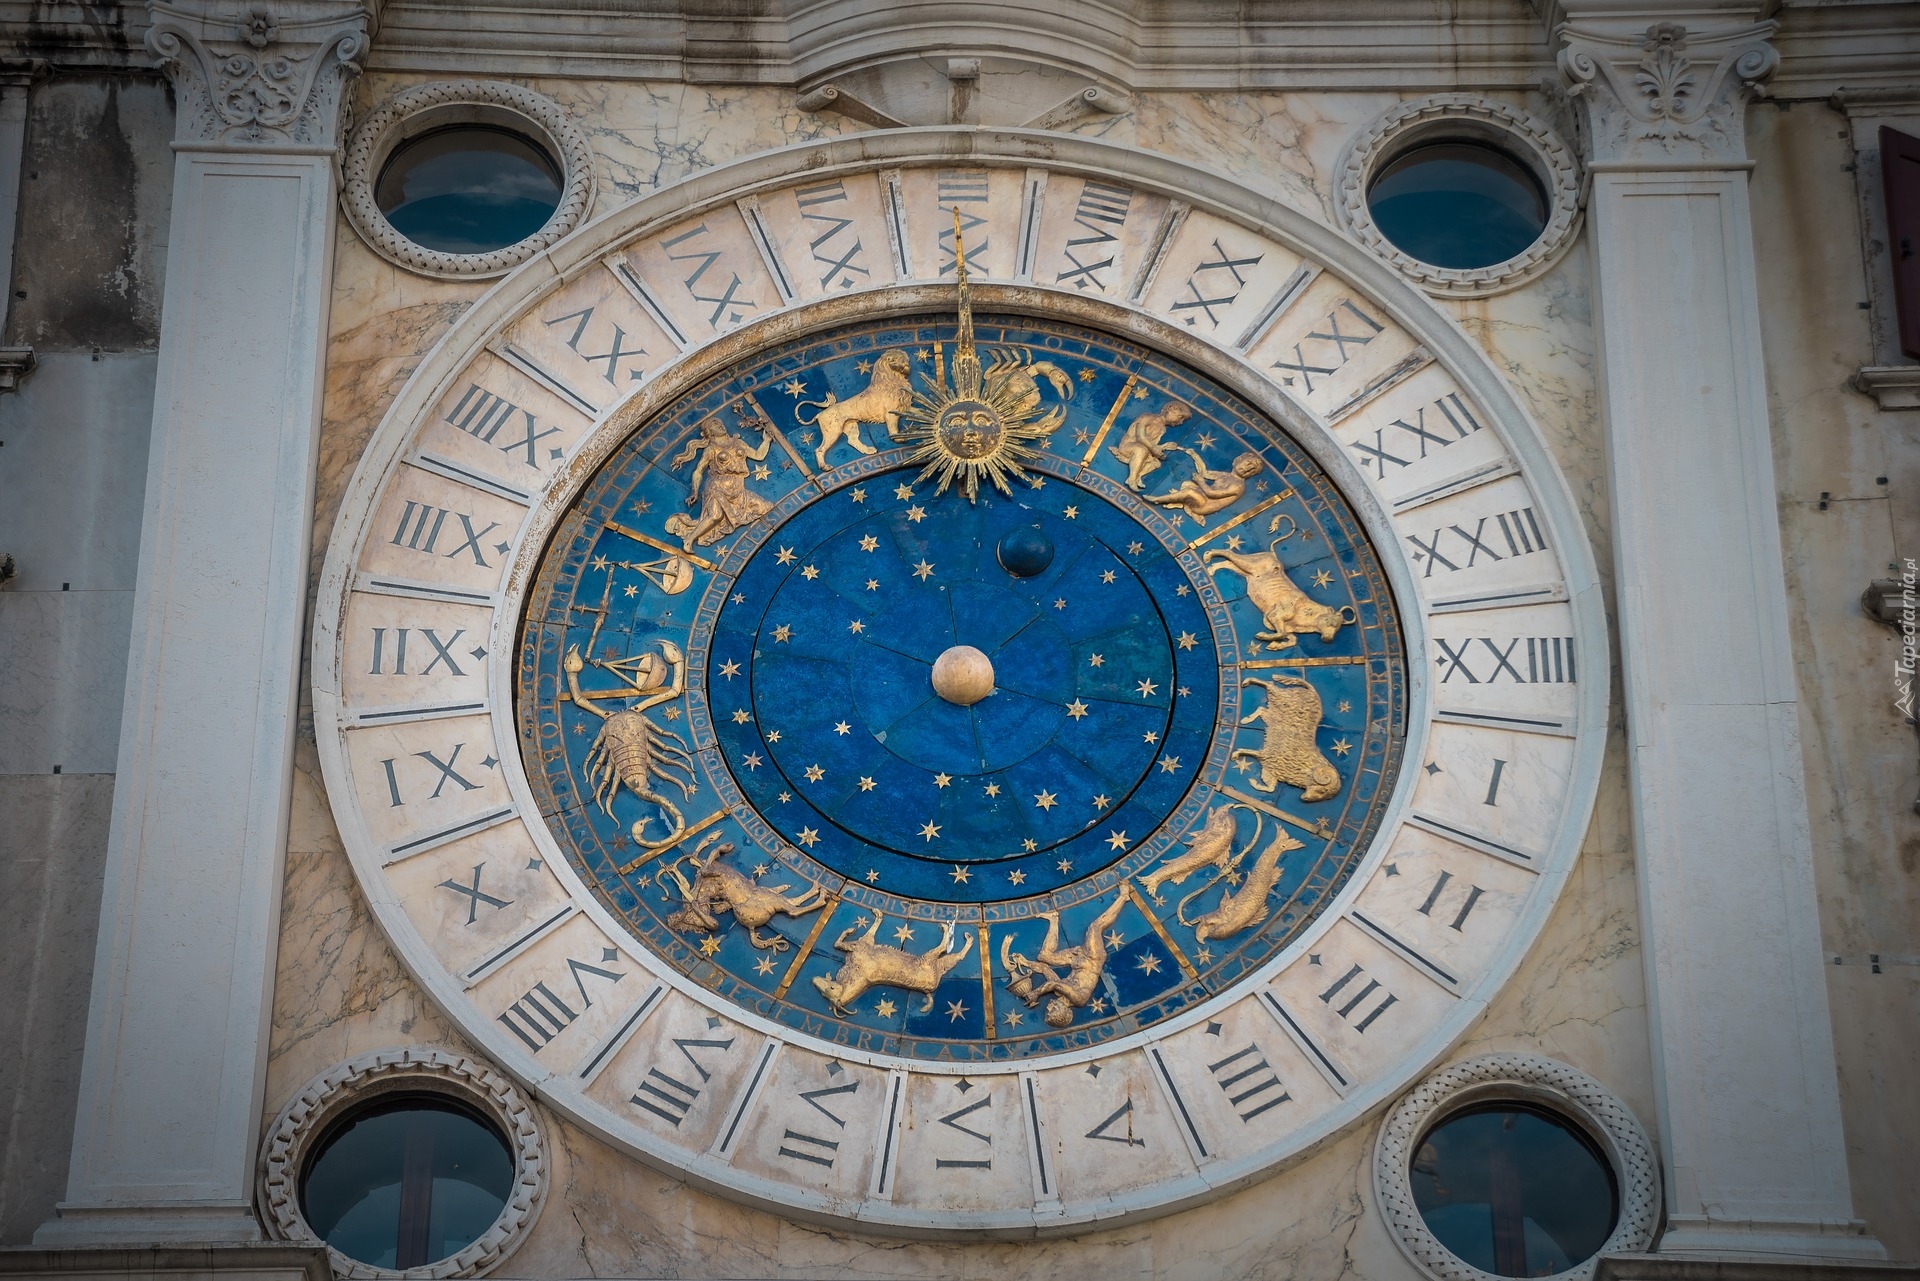 Tarcza, Zegar astronomiczny, Wieża zegarowa, Wenecja, Włochy